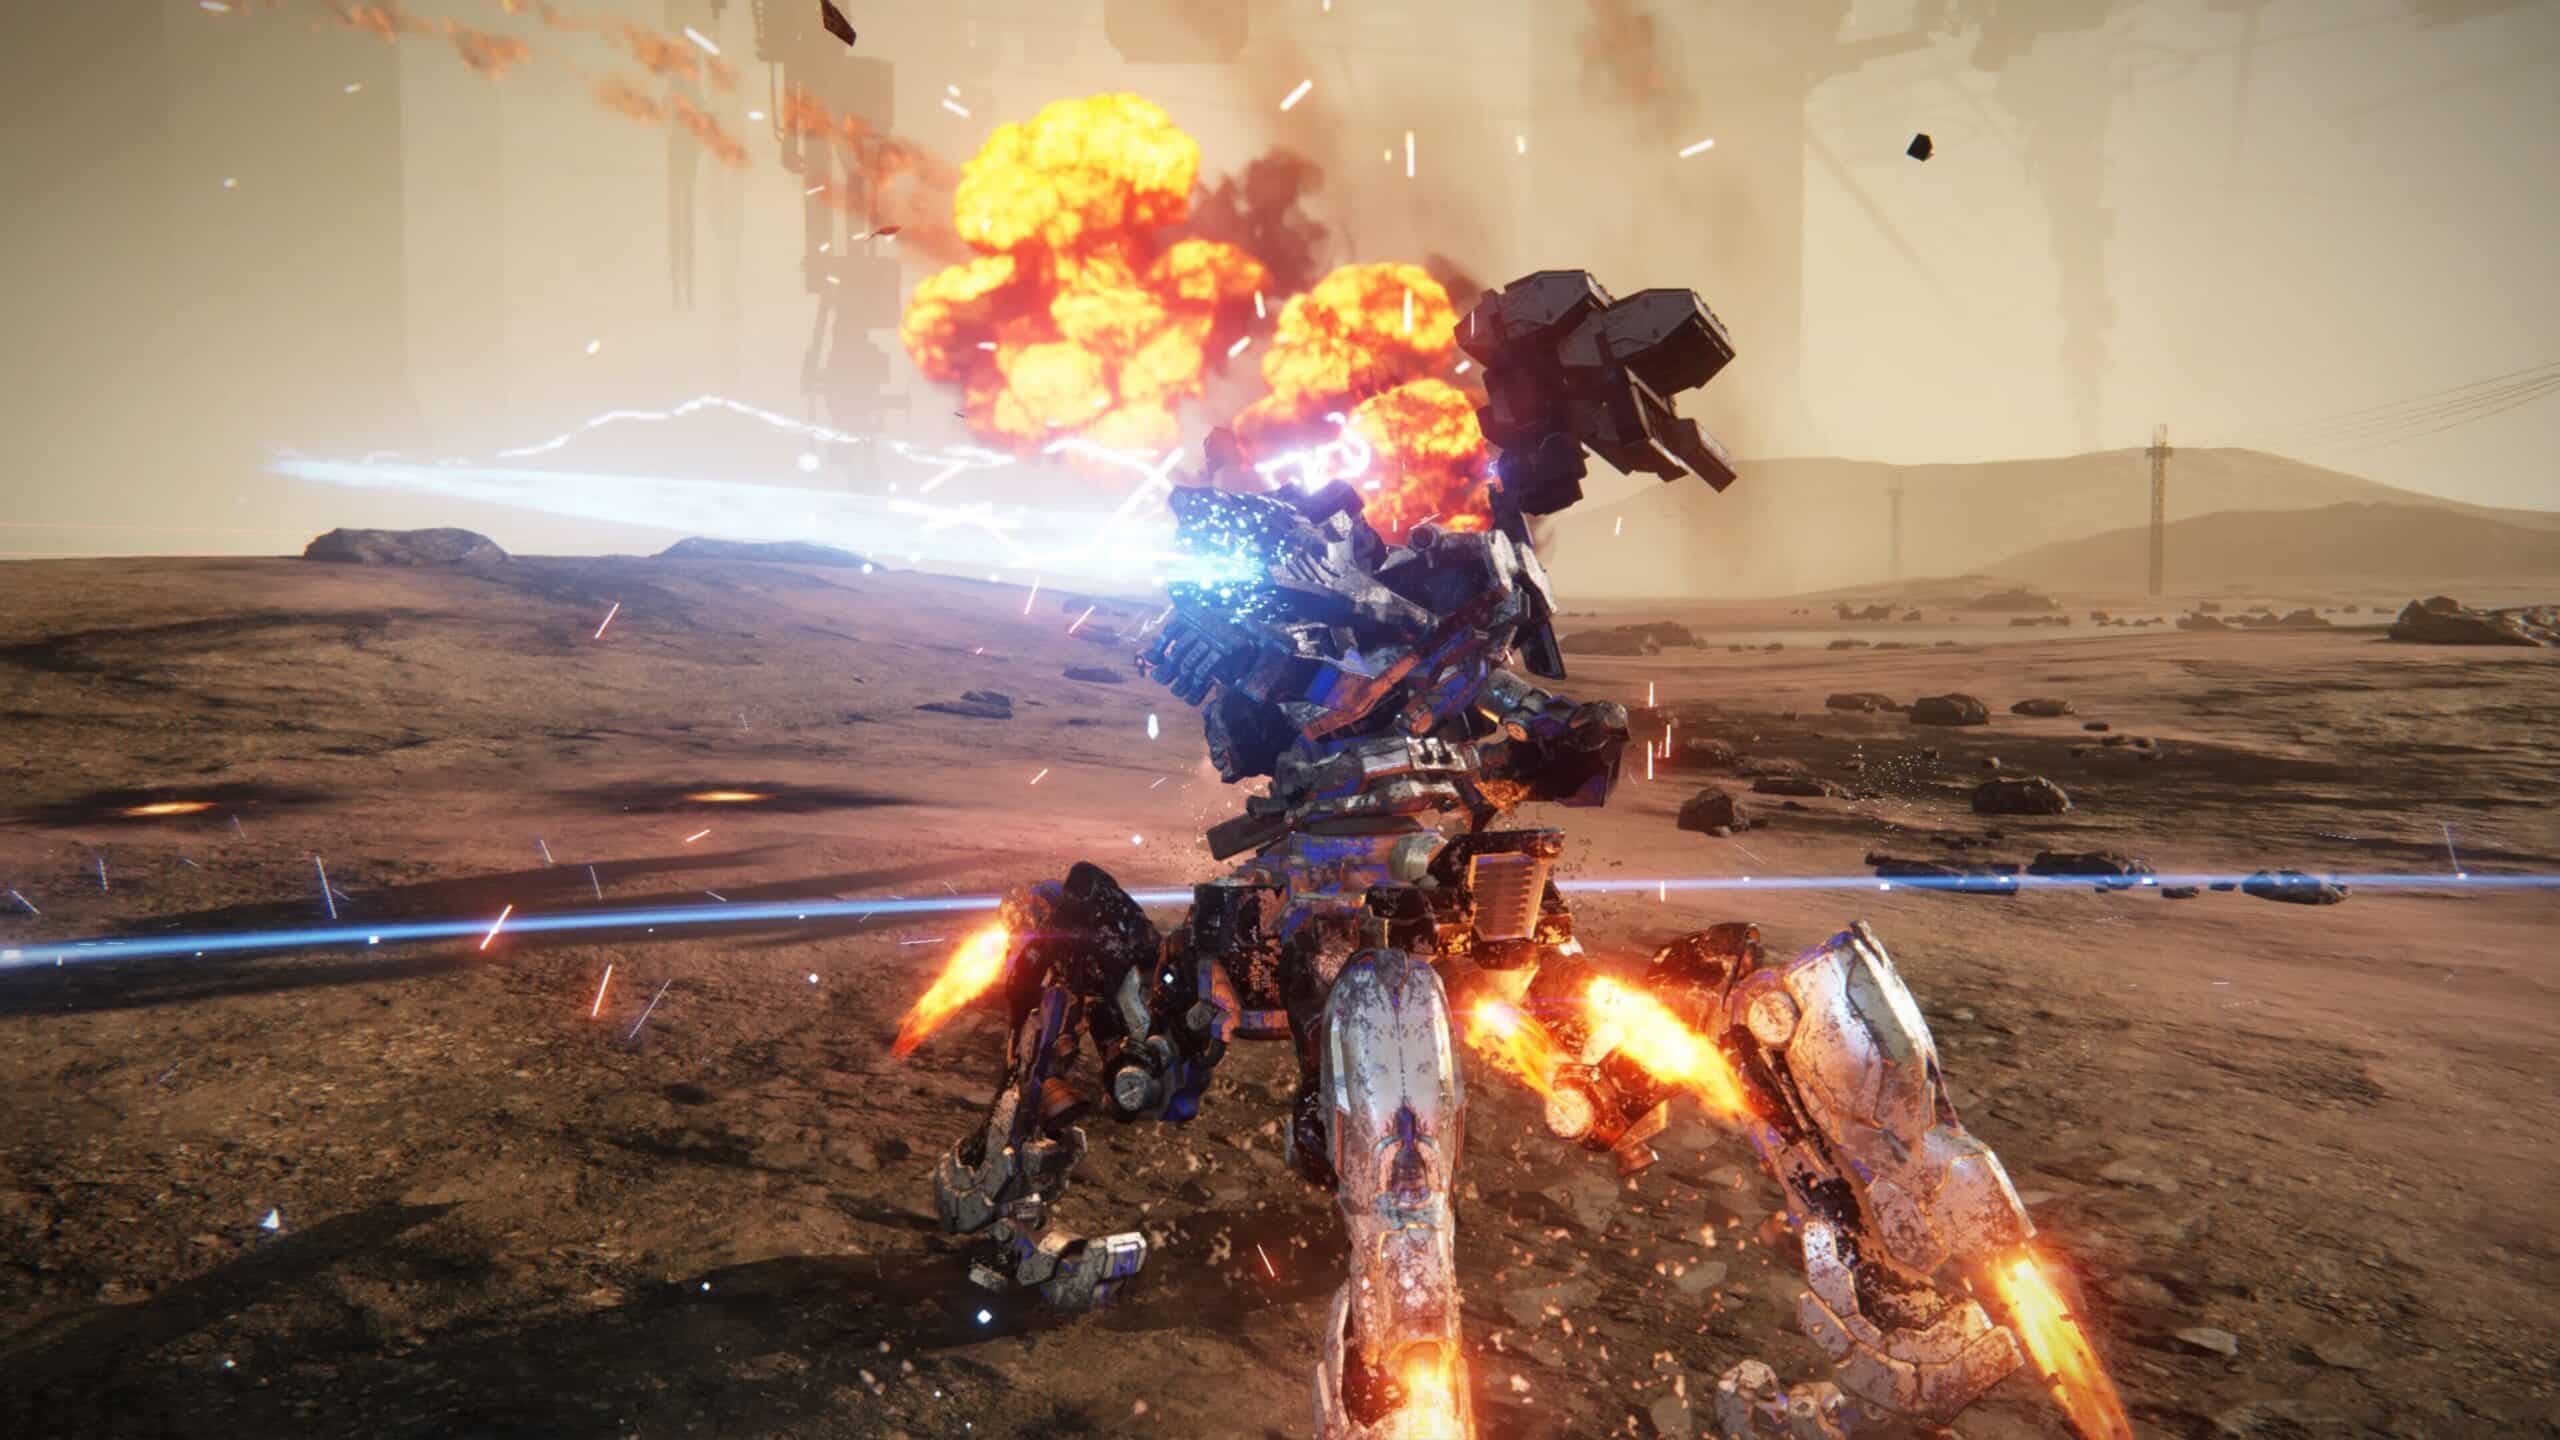 Review: Armored Core 6 resume como deve ser um jogo de ação